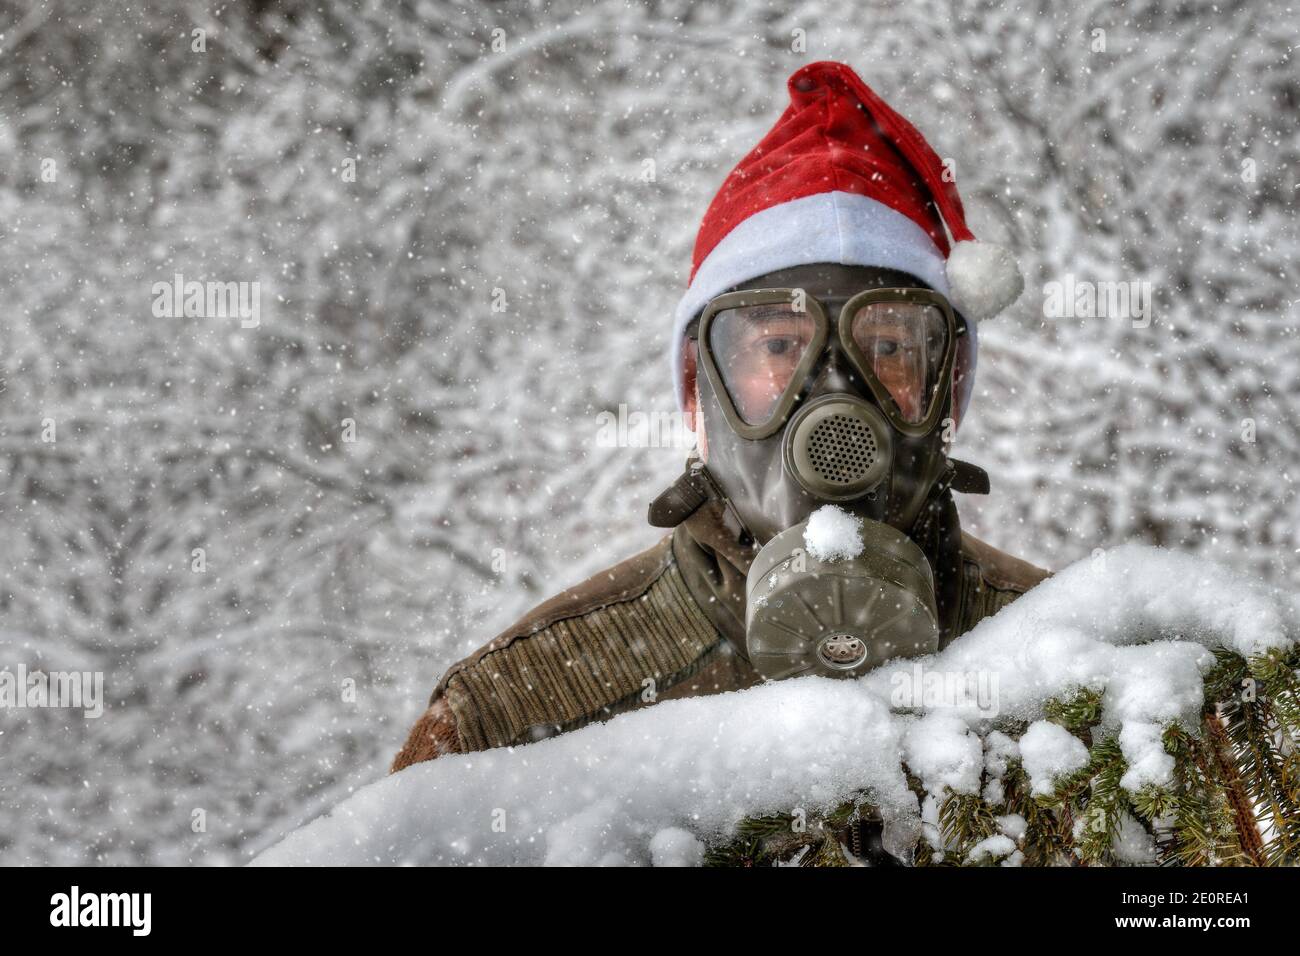 Dietro un ramo innevato di abete si trova un uomo con una maschera a gas e un cappello rosso Santa in una nevicata nel paesaggio invernale. Foto Stock